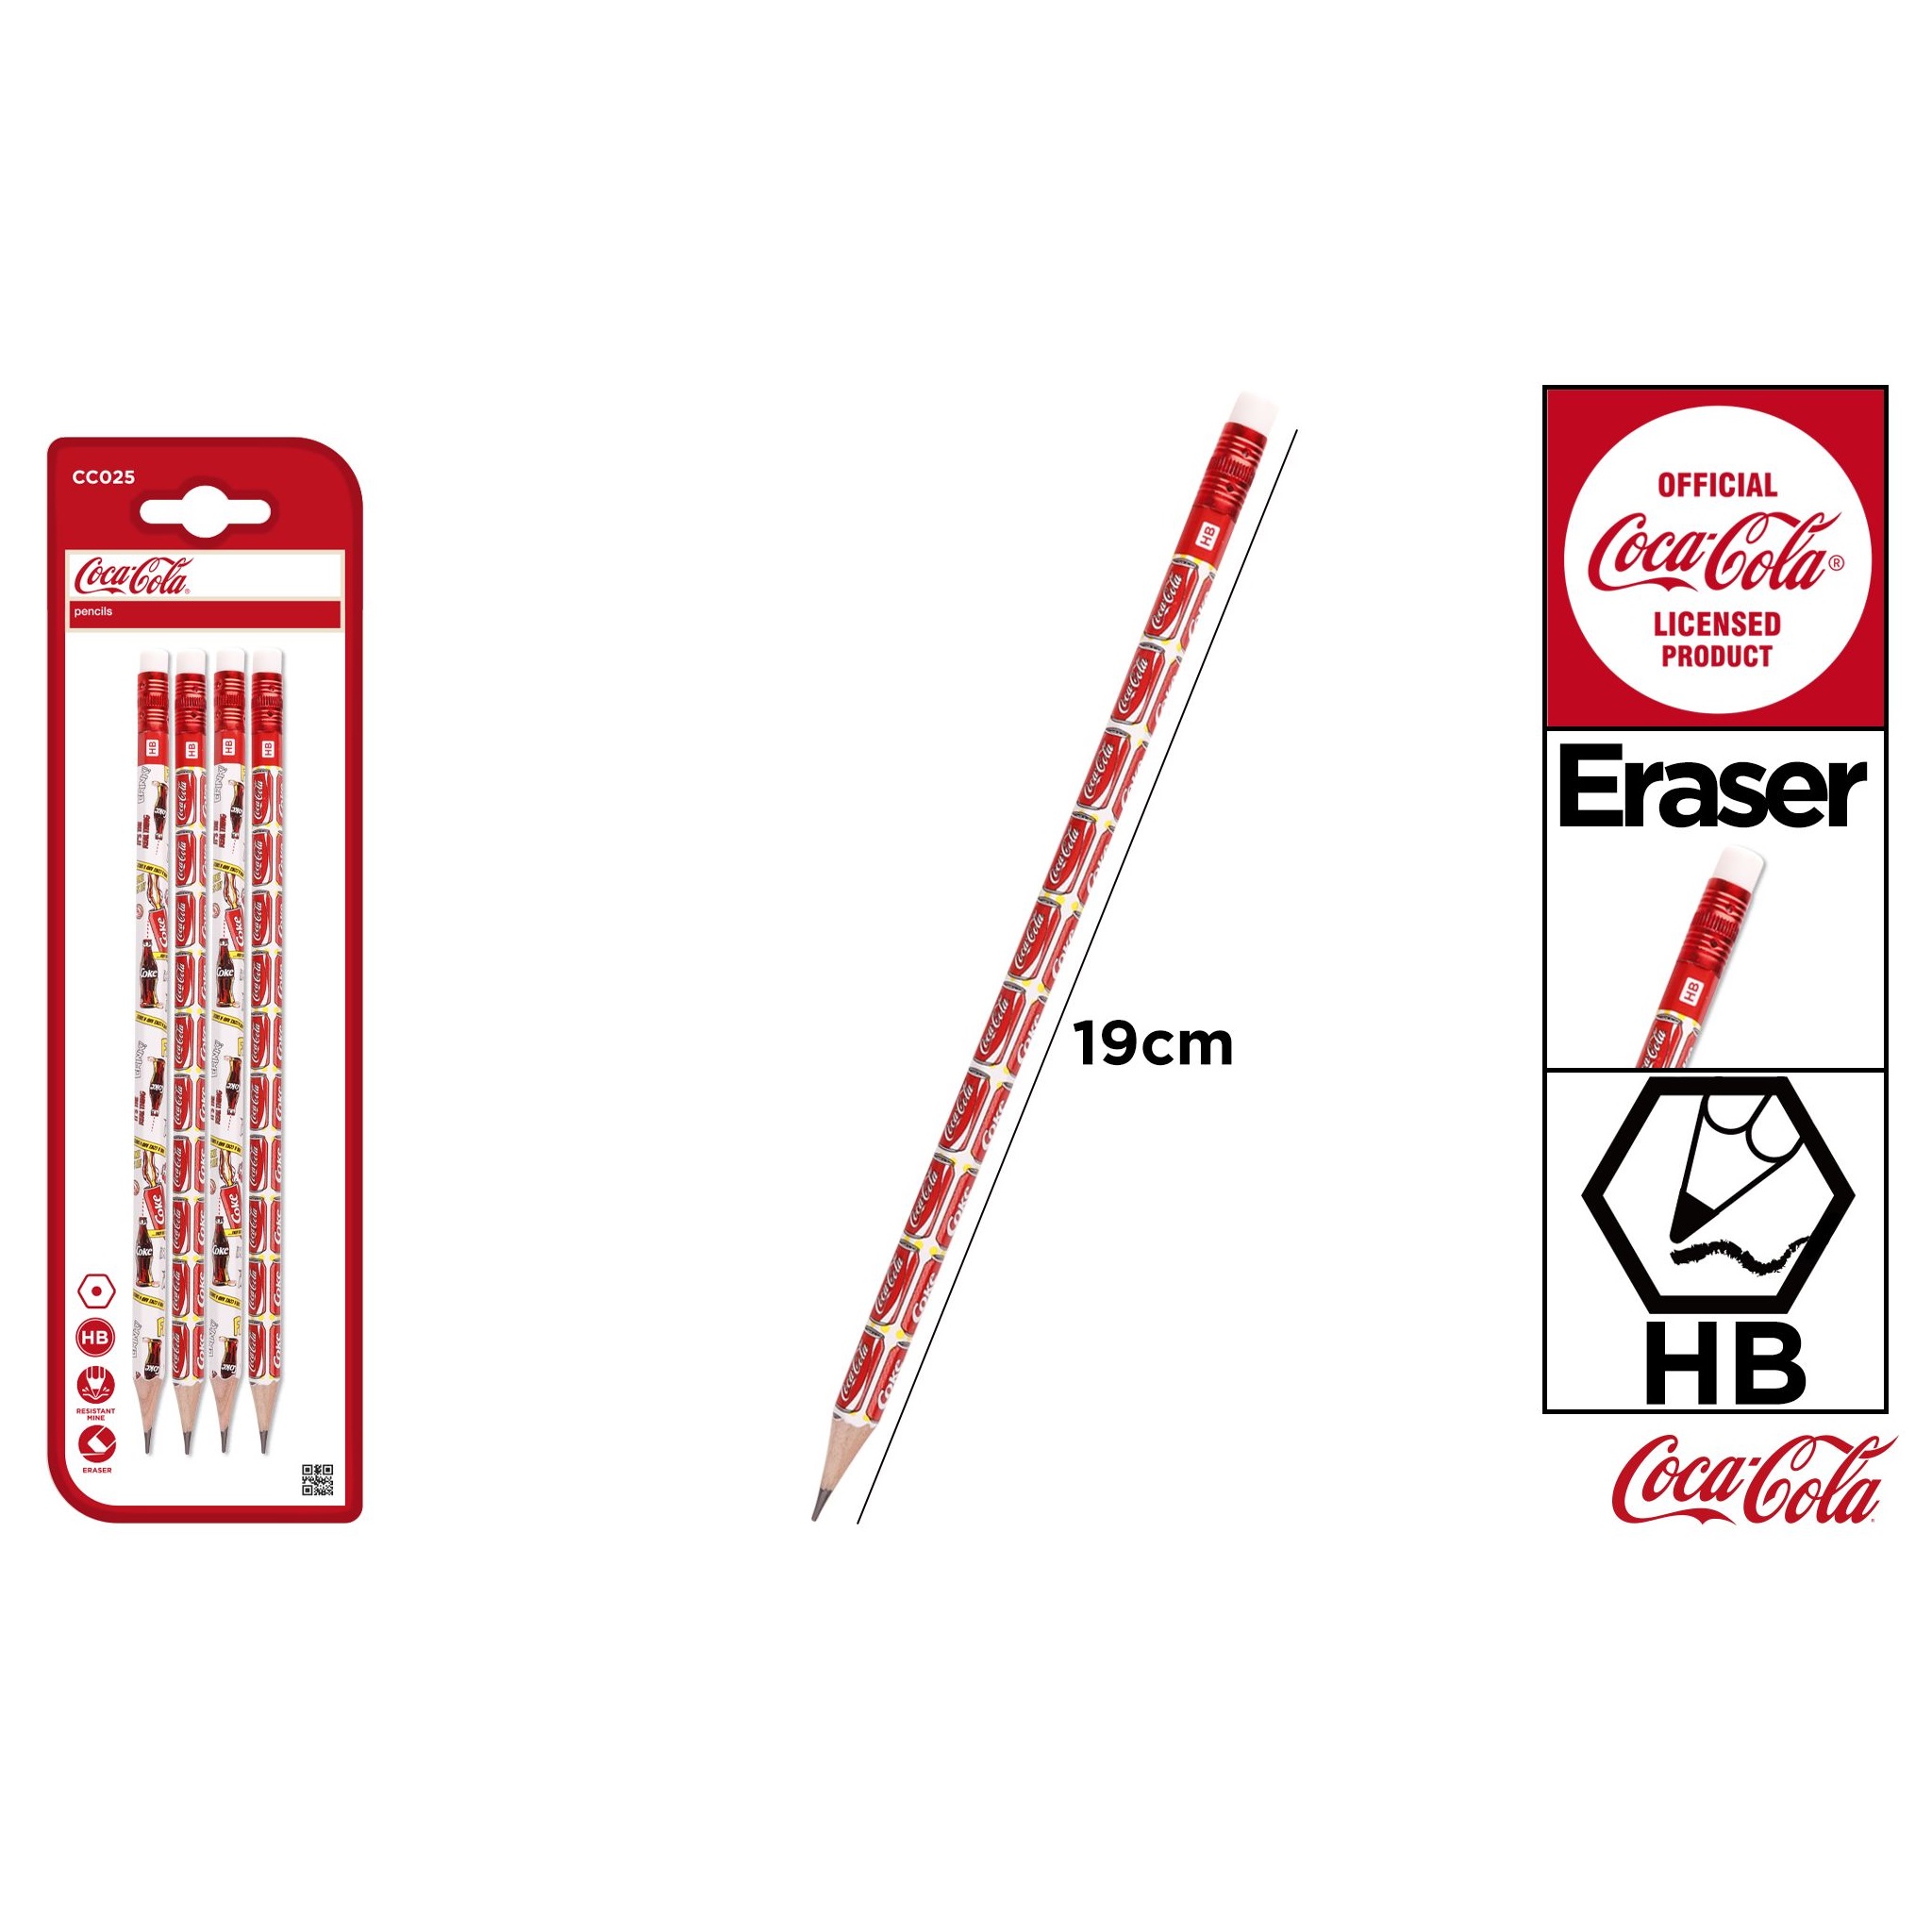 CC025 Coca-Cola Co-Branded Graphite Pencils 4 Pencil Set with Eraser